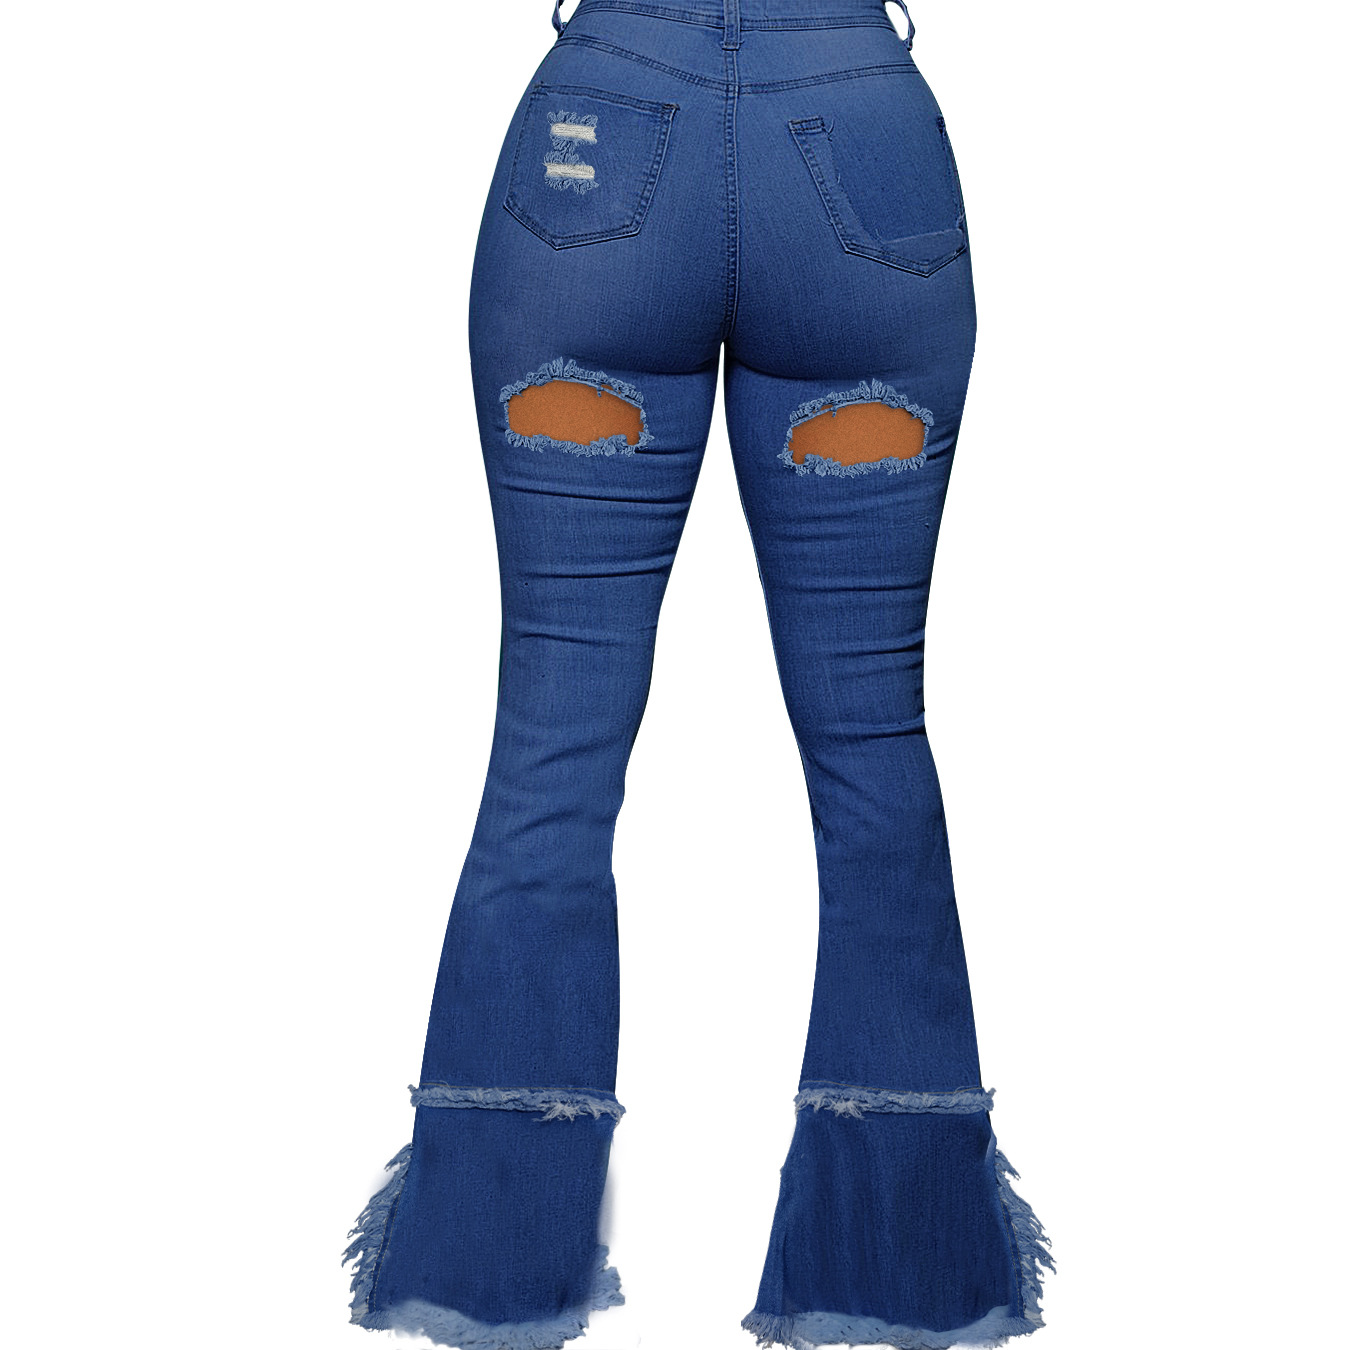 bootcut jeans rotos nihaostyles ropa al por mayor NSWL85336